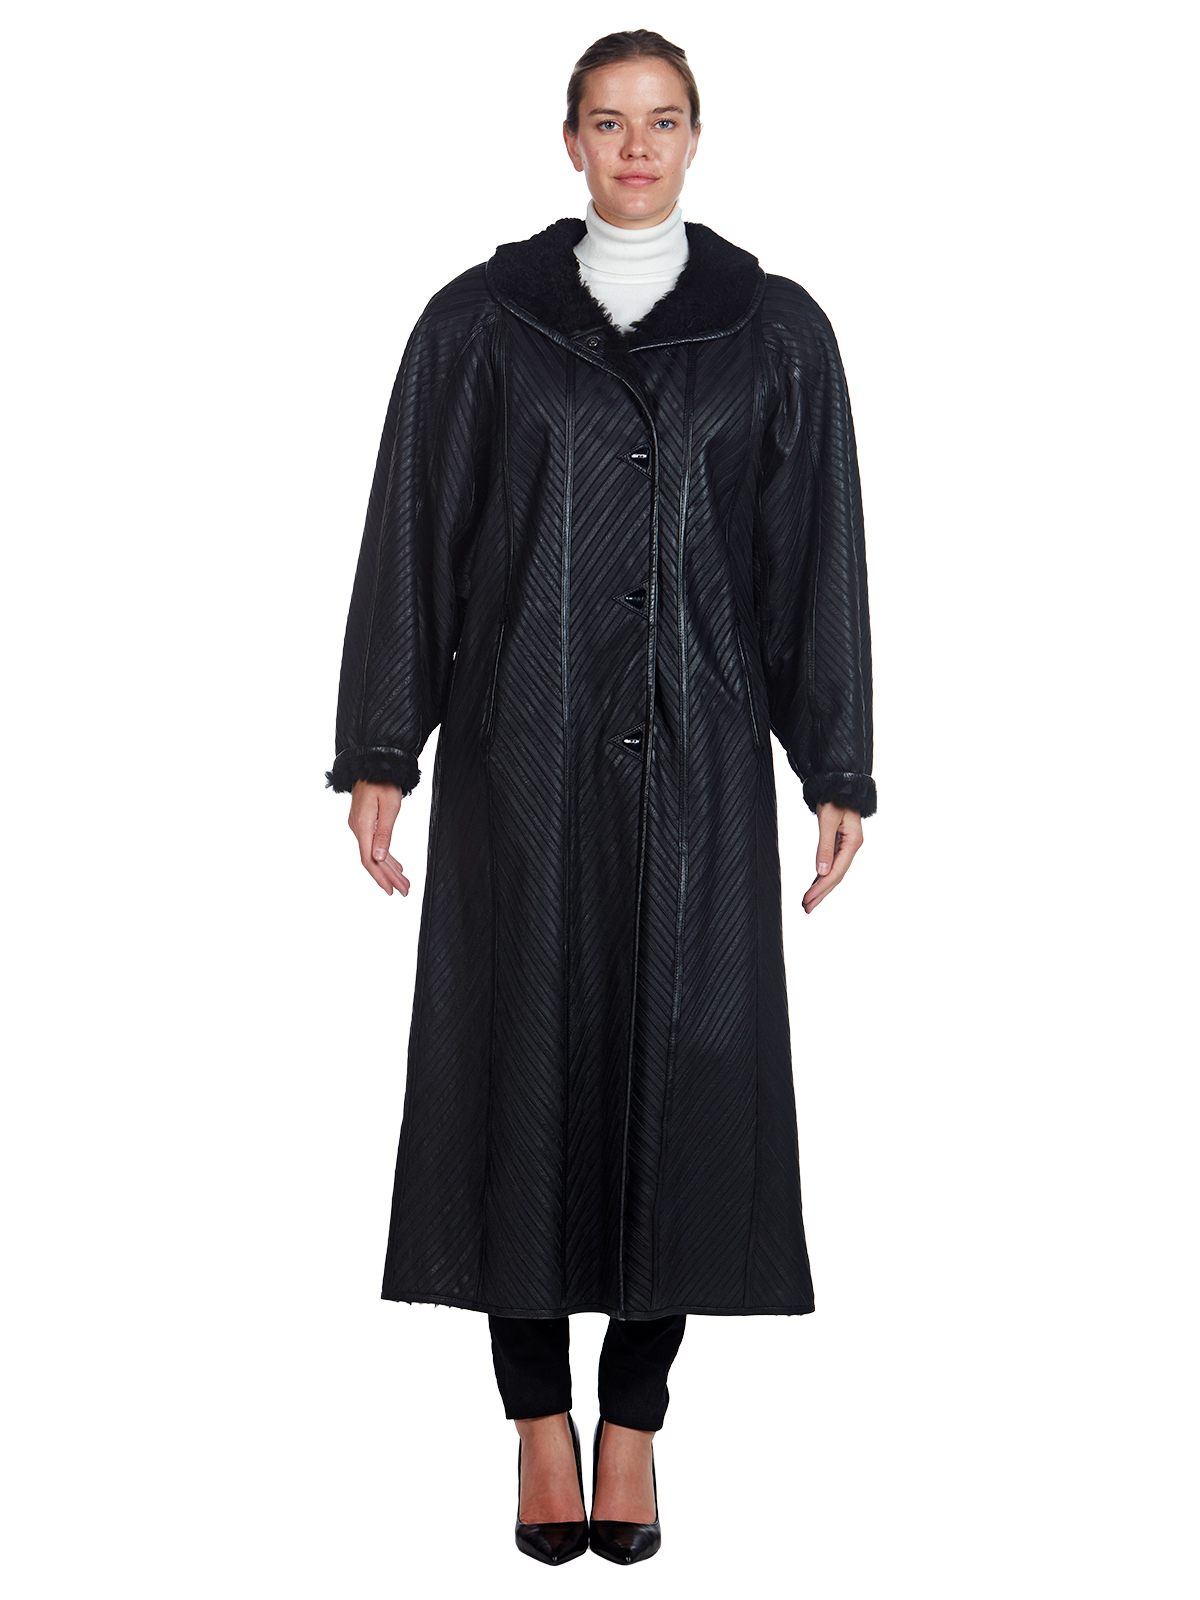 Black Dyed Shearling Lamb Full Length Coat - Women's Shearling Coat ...